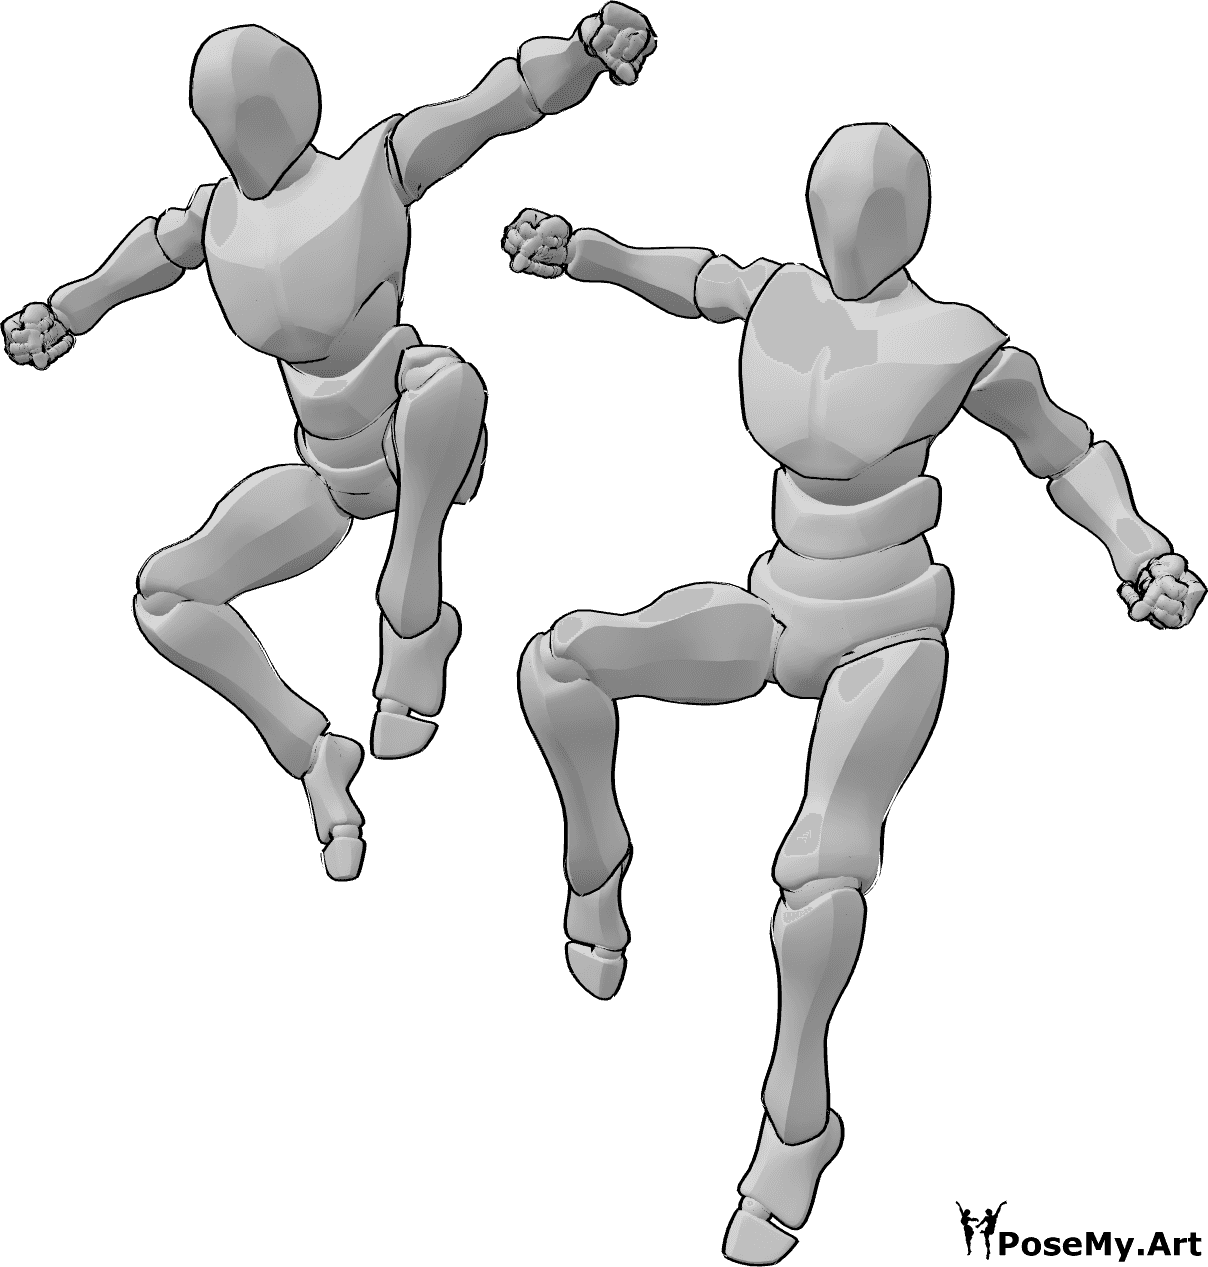 Referencia de poses- Postura de salto de los machos - Dos machos se posan saltando desde una altura